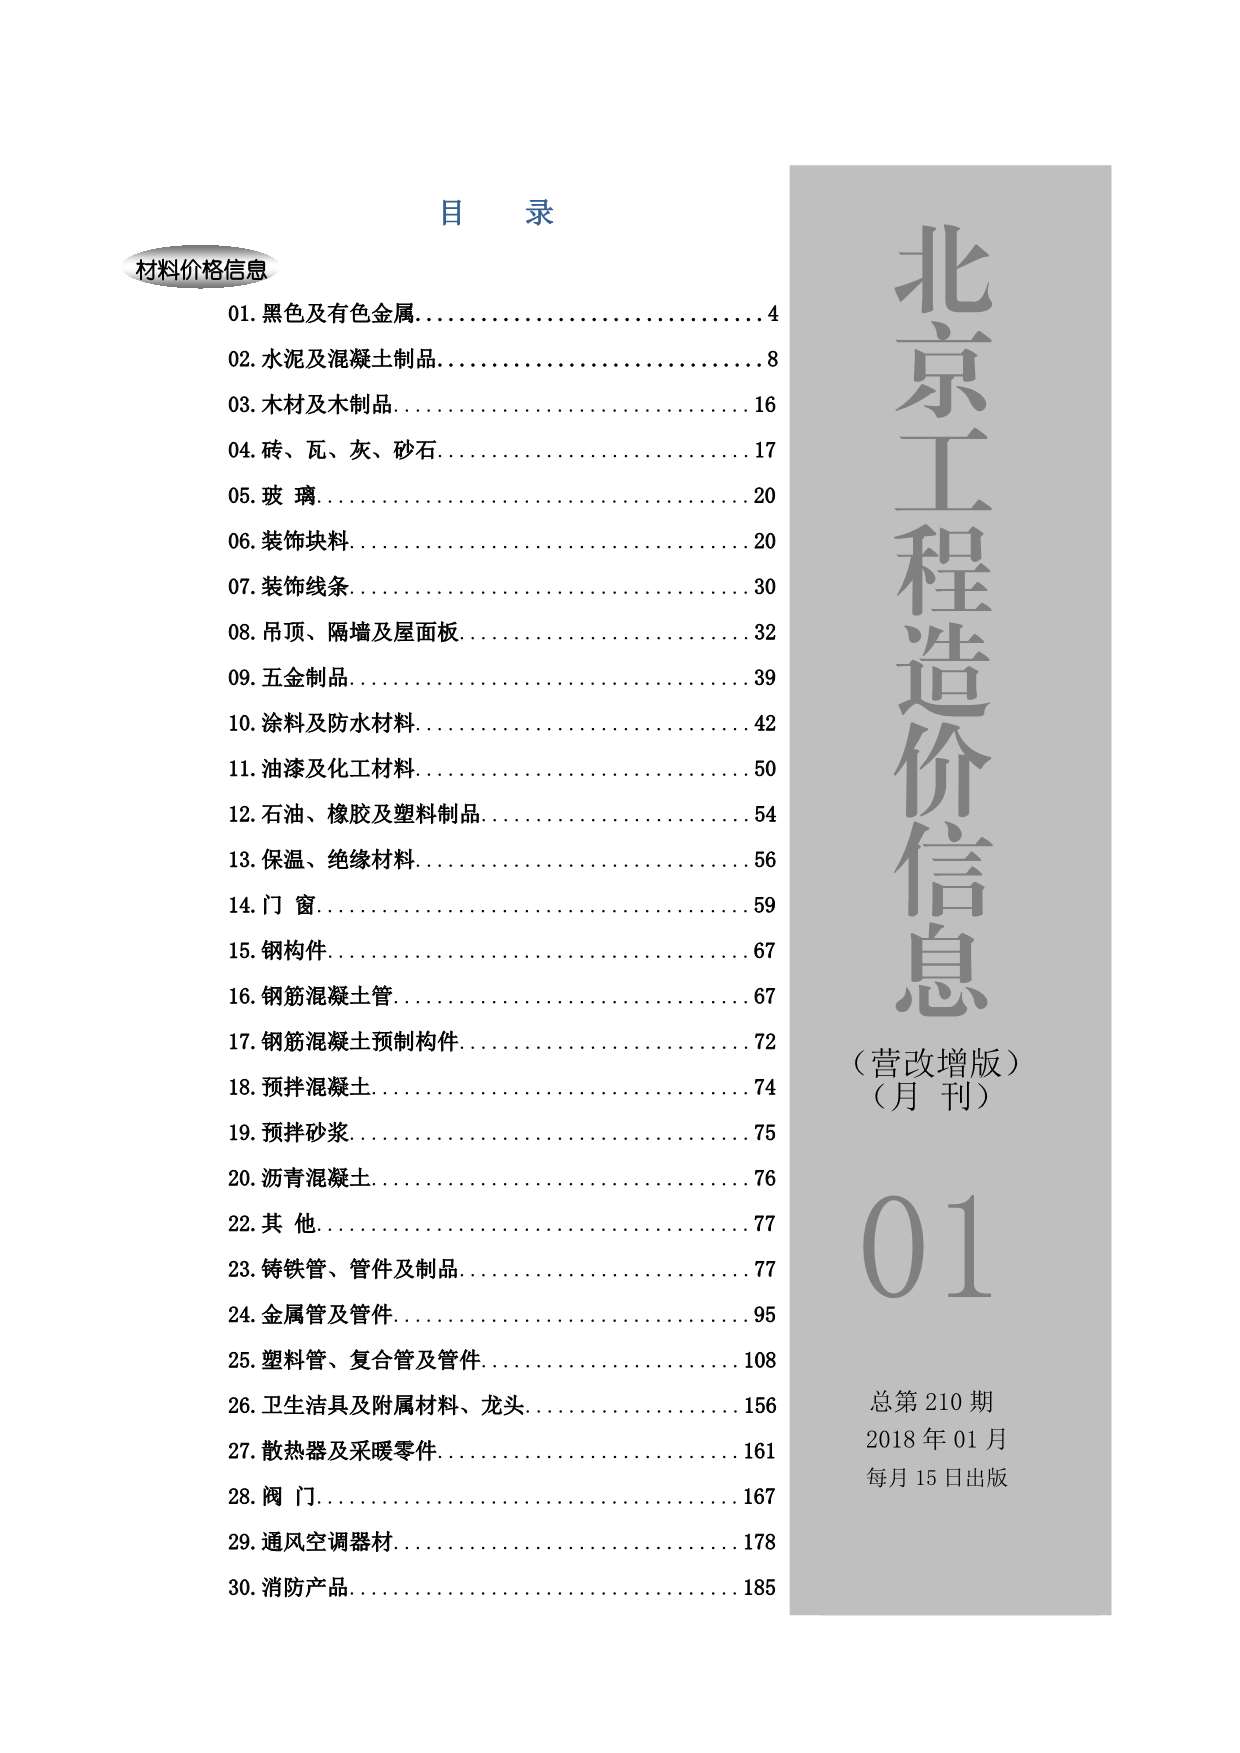 北京市2018年1月建材价格依据